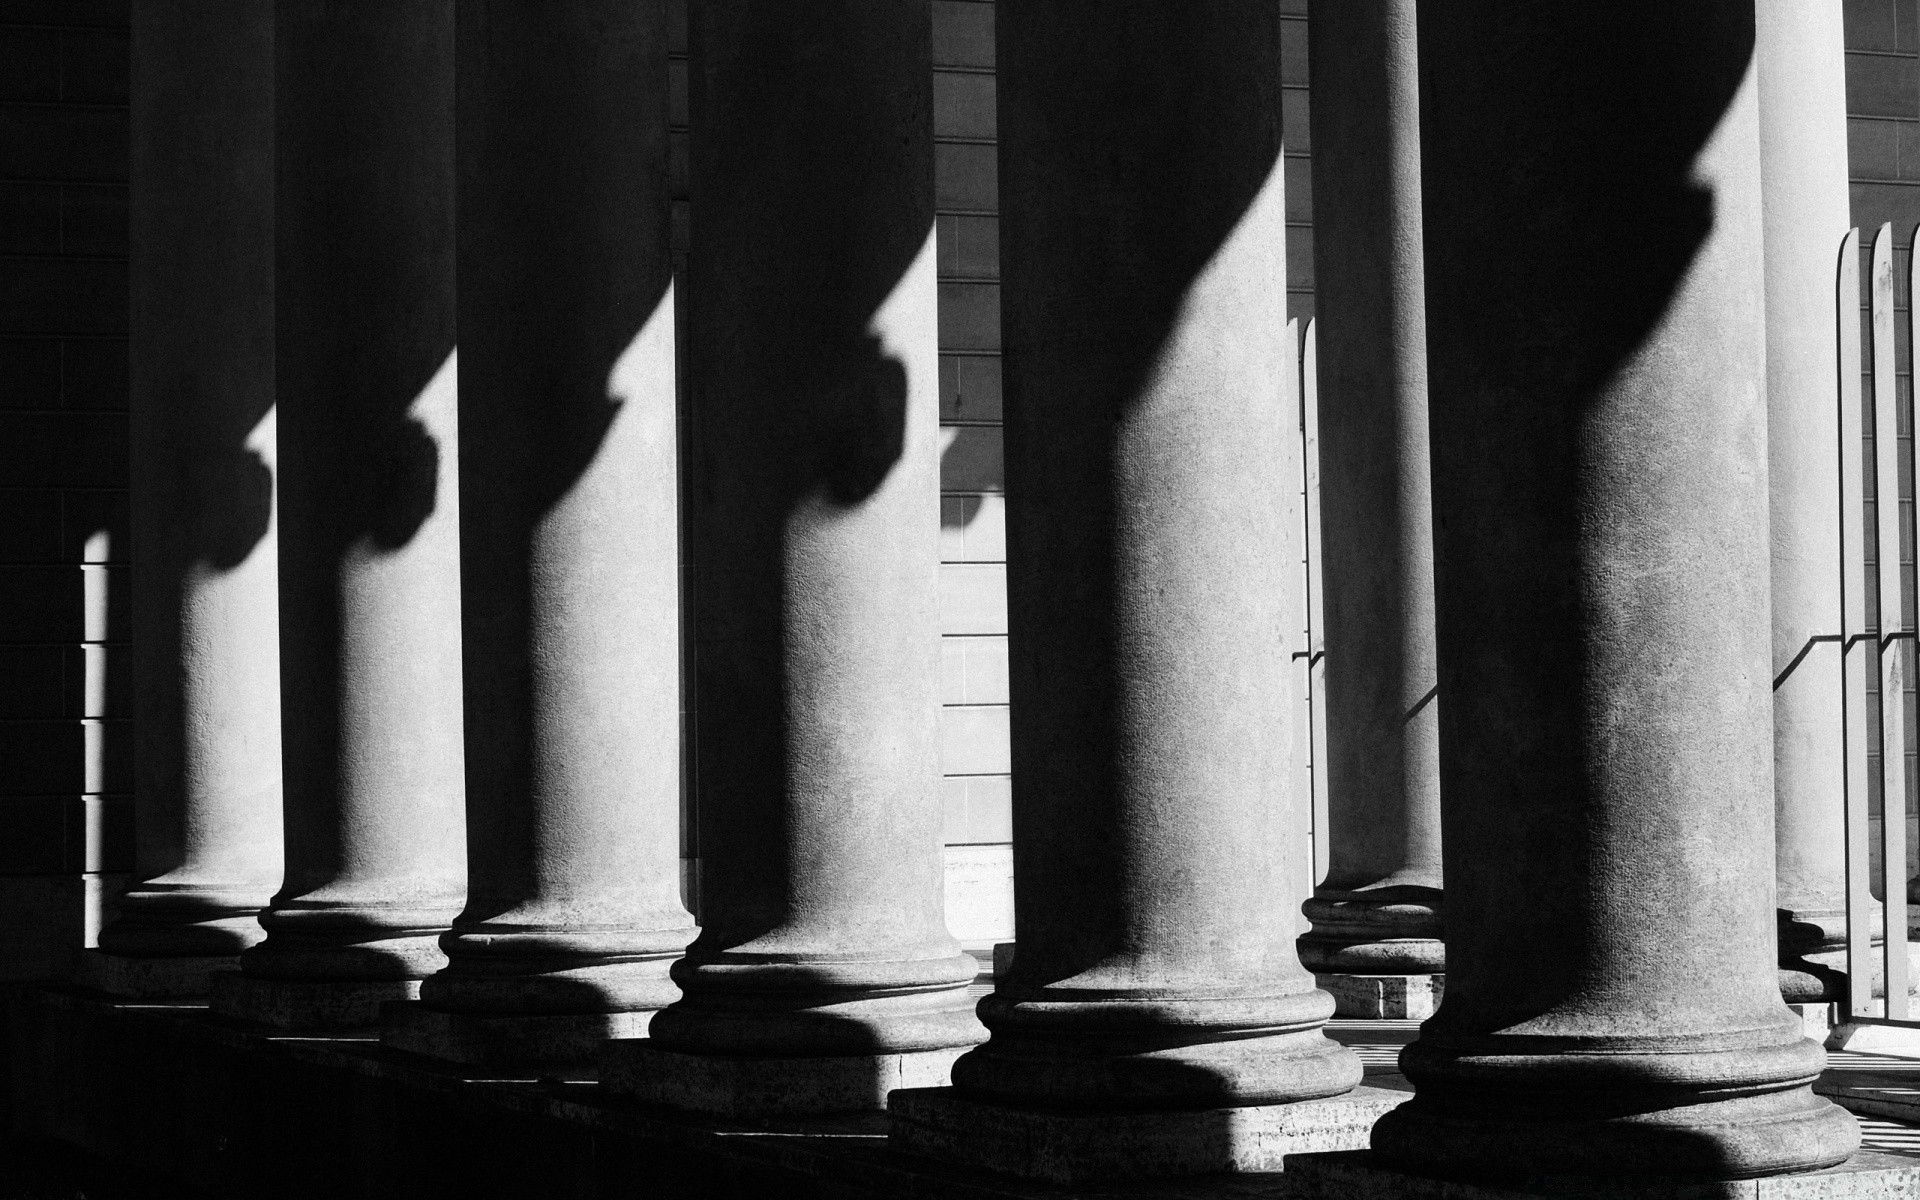 черно-белое монохромный колонки поддержка башня архитектура тень свет в помещении искусство